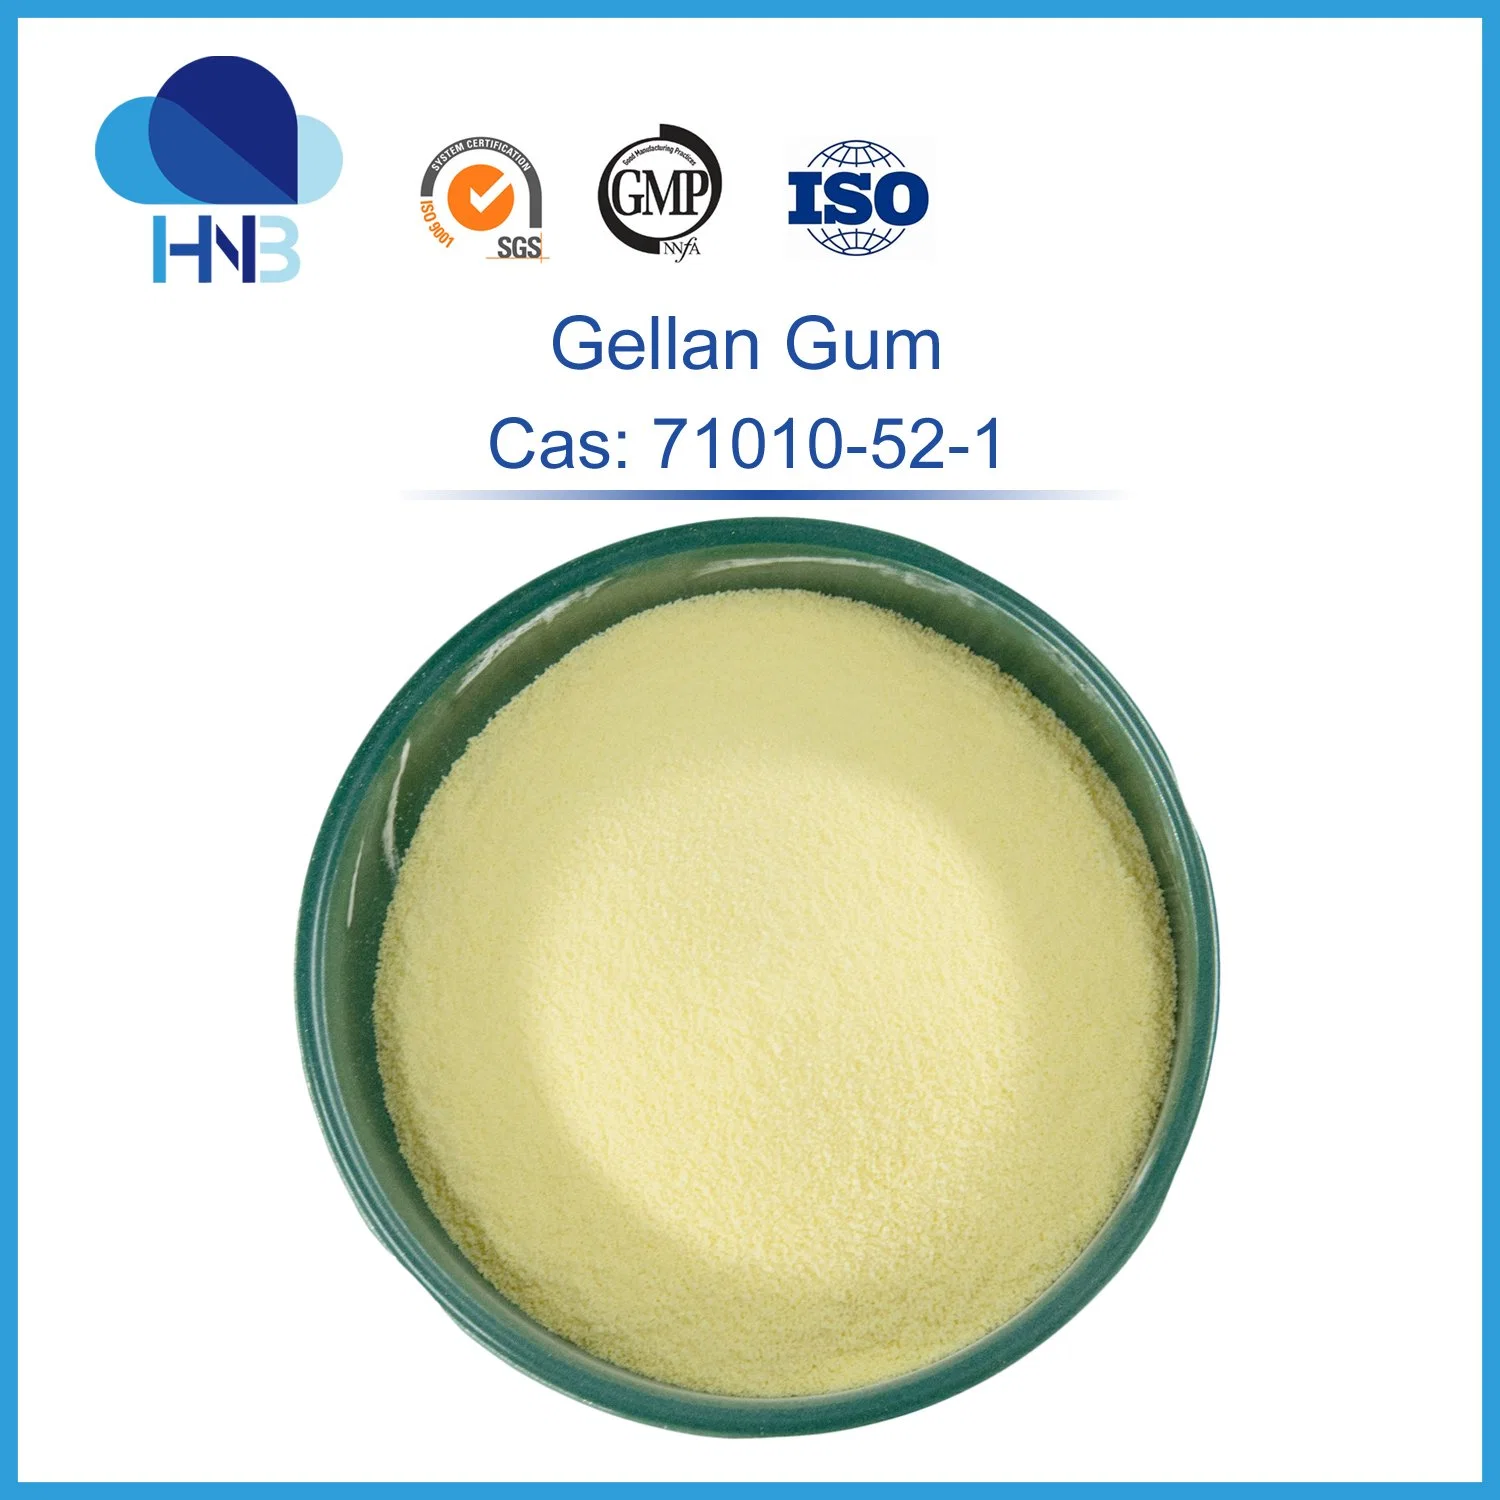 Food grade SAE 71010-52-1 acyl haute/basse de la poudre d'acyl gellan gum